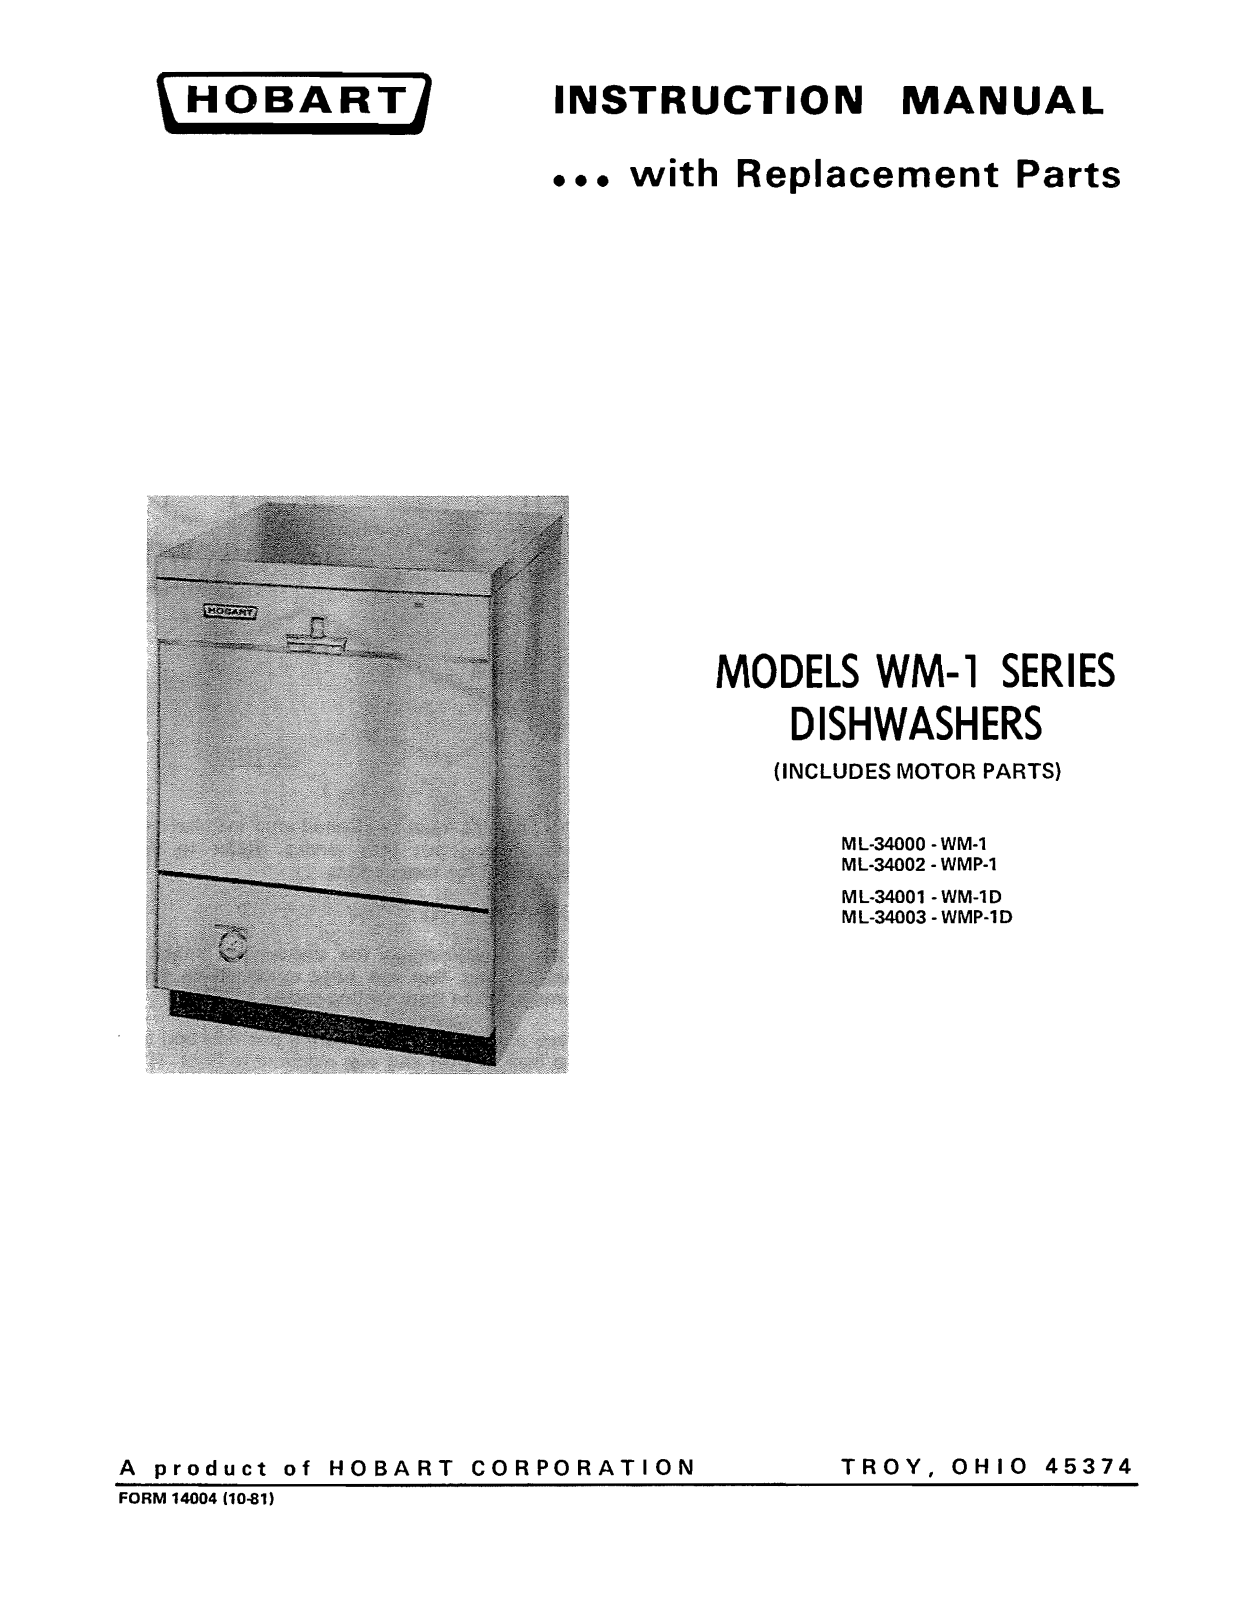 Hobart ML-3400-MW-1, ML-34003-WMP-1D, ML-34002-WMP-1 User Manual